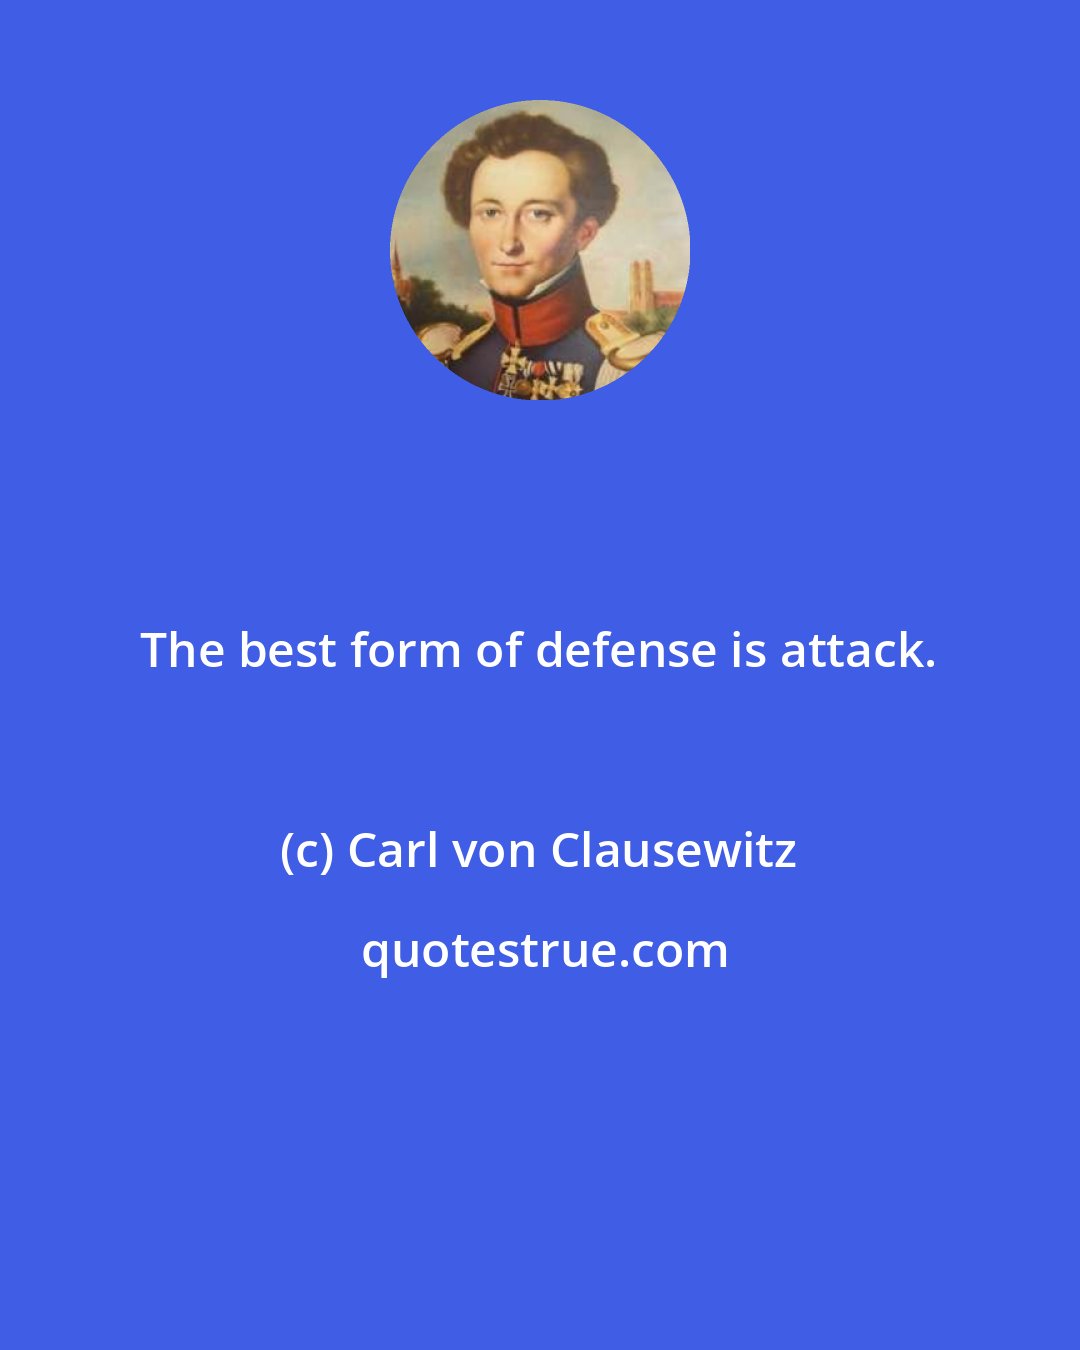 Carl von Clausewitz: The best form of defense is attack.